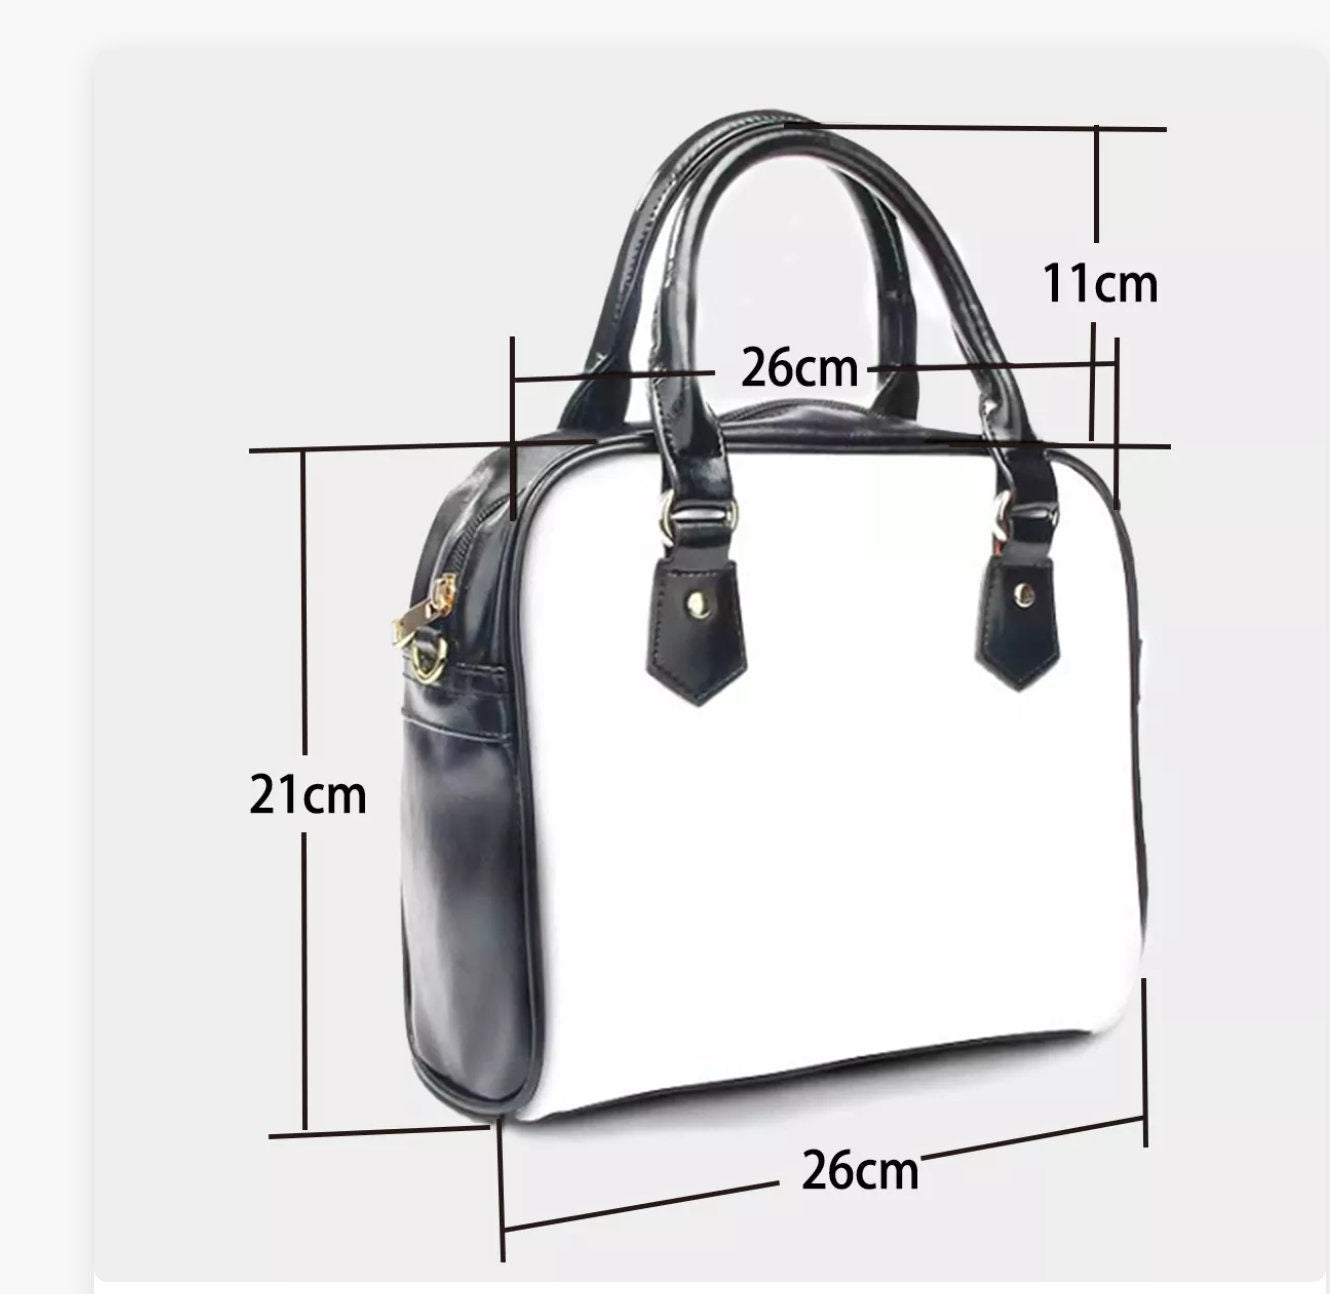 Retro-Handtasche, MidCentury-Stil, 50er Jahre graue Atomic-Print-Handtasche, Retro-Geldbörse, Damenhandtaschen, Vintage-Stil-Geldbörse, Handtasche im 50er-Jahre-Stil